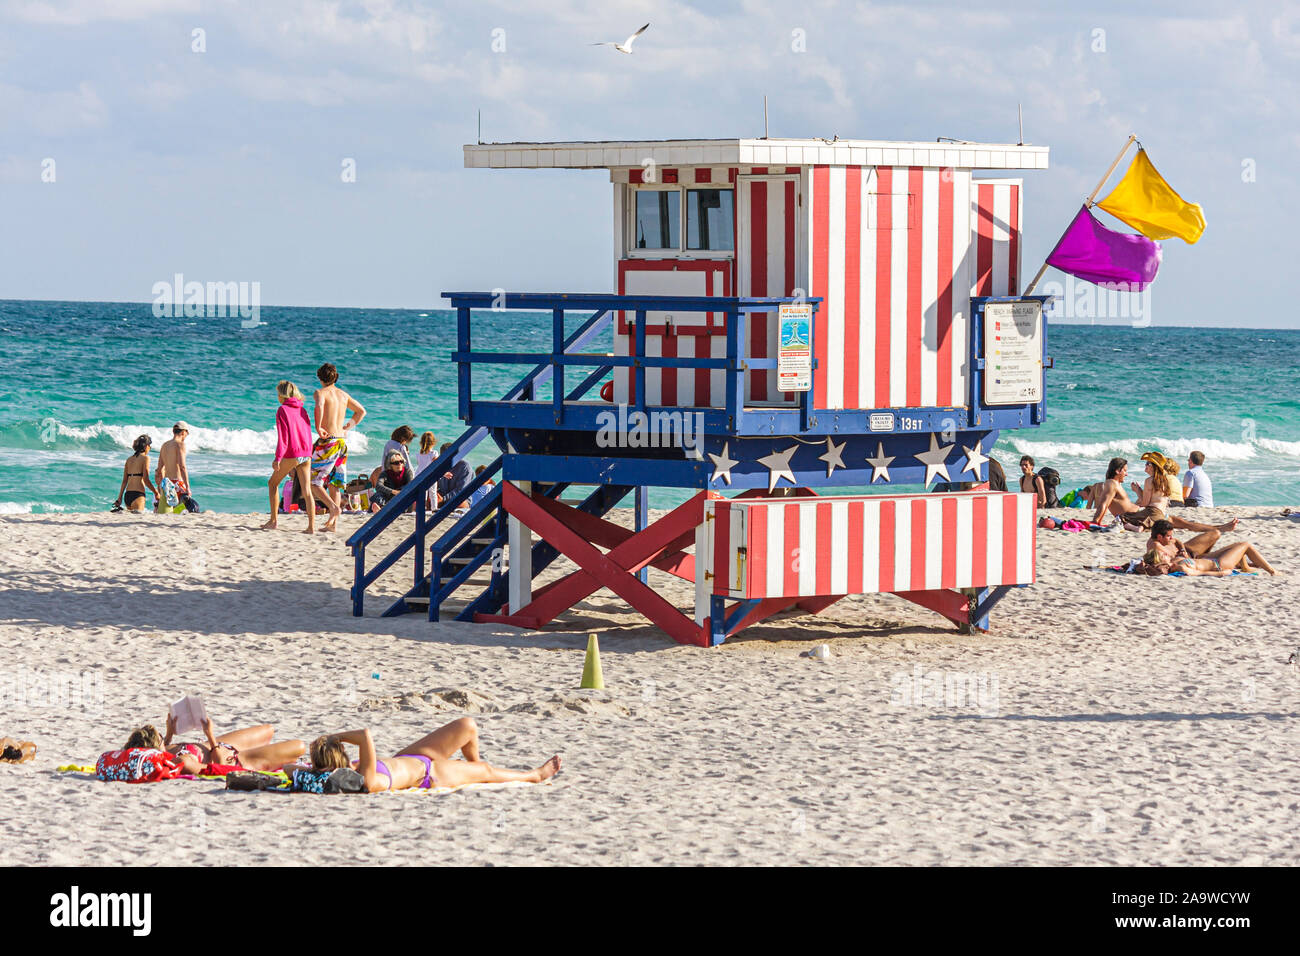 Miami Beach Floride, océan Atlantique rive de l'eau, surf, station de sauveteurs, cabane, les visiteurs voyage voyage tourisme touristique sites touristiques culture cu Banque D'Images